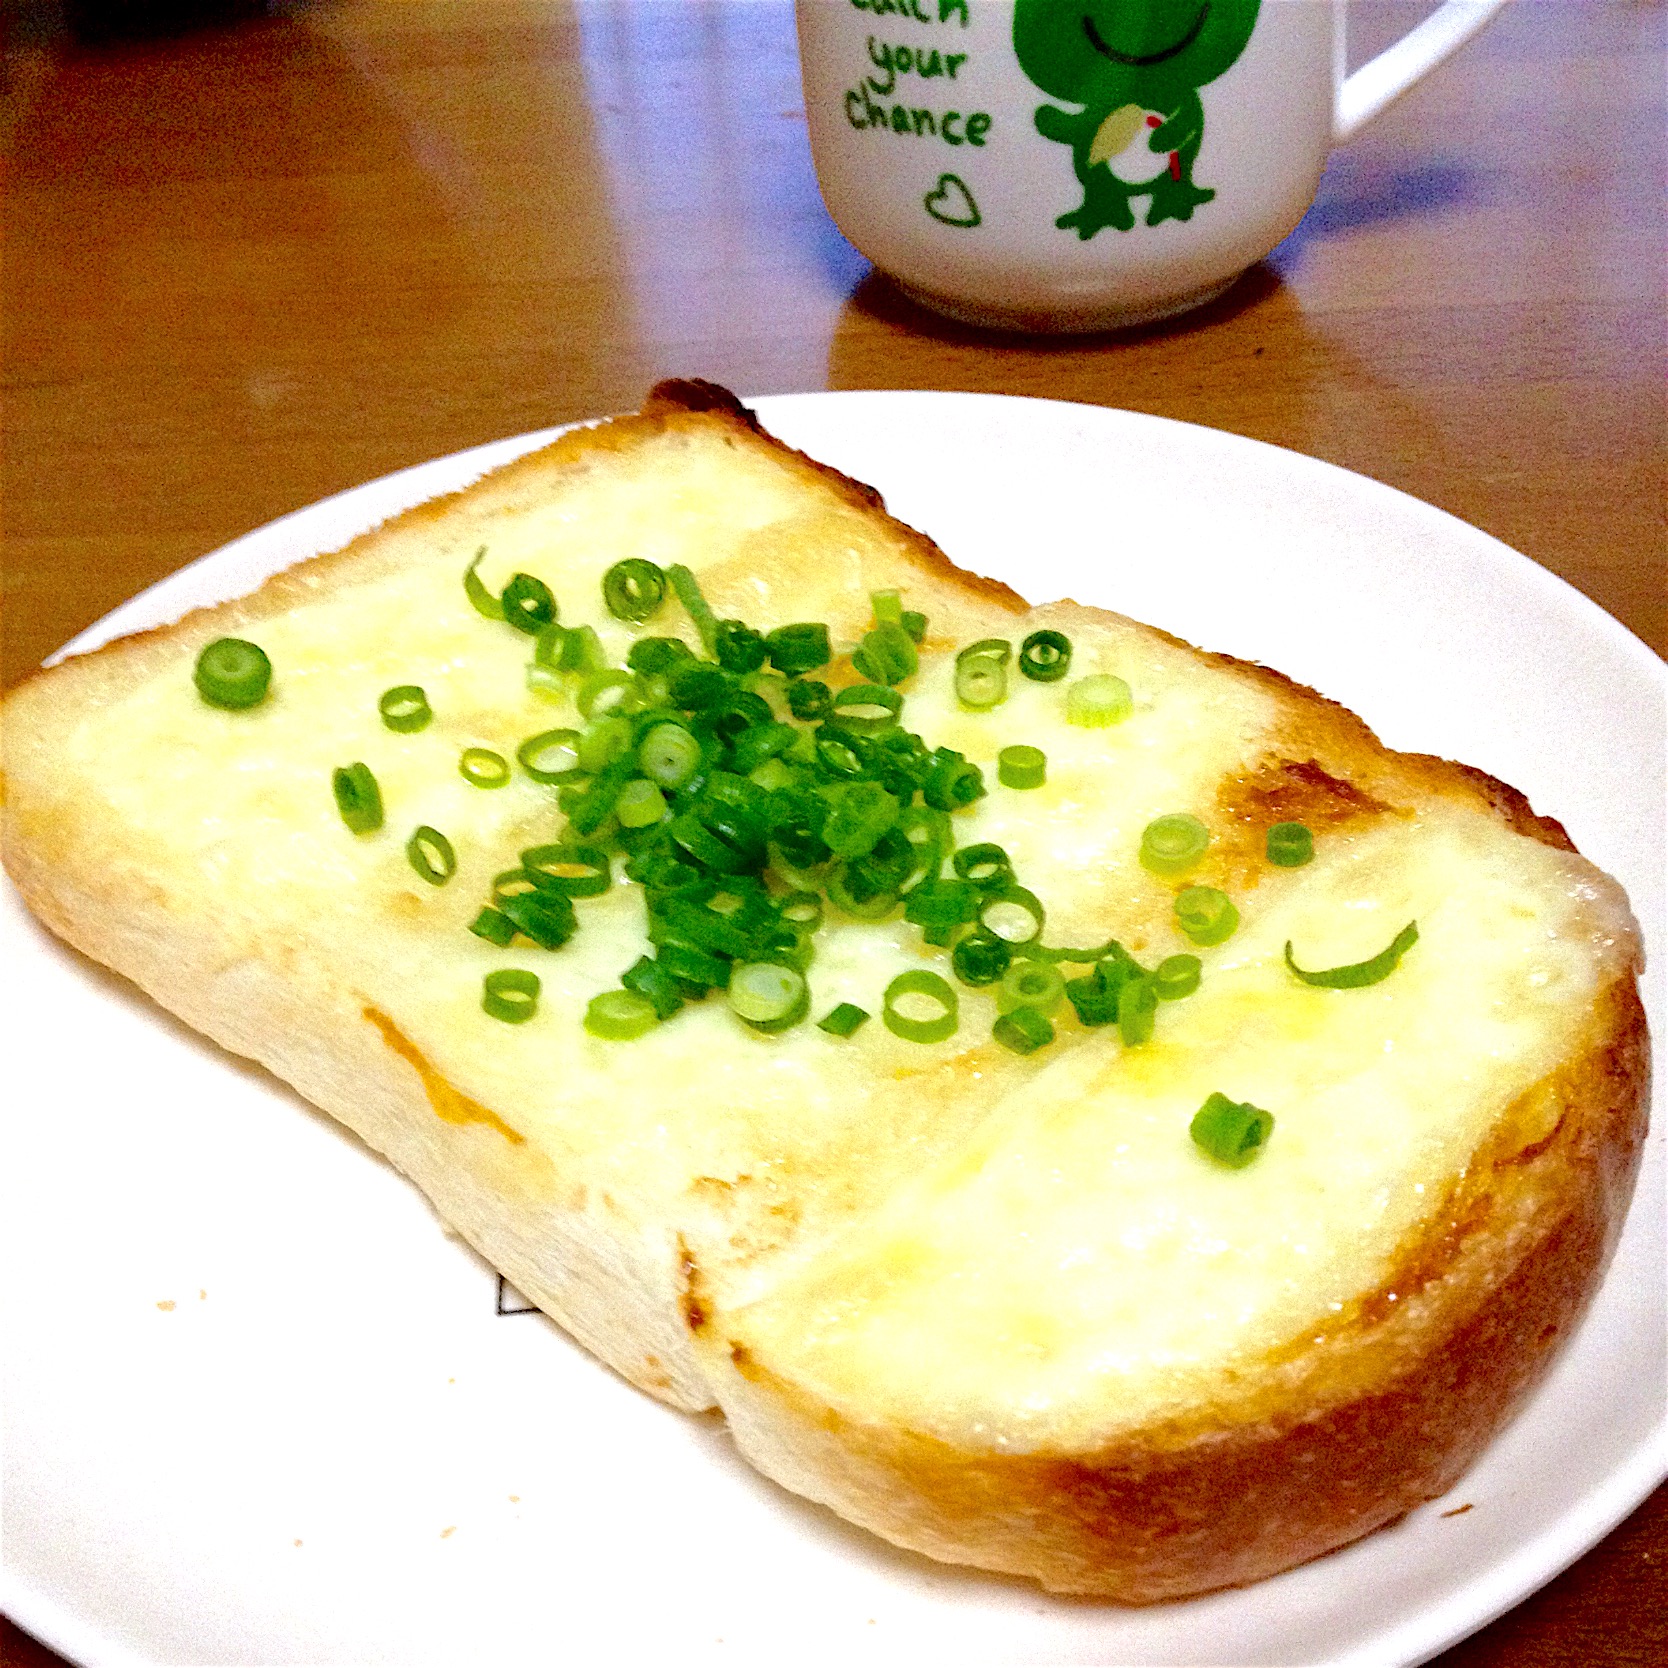 ネギ?チーズトースト??カリカリ・モッチリ旨旨〜だょ〜??#イギリスパン#ハードパン